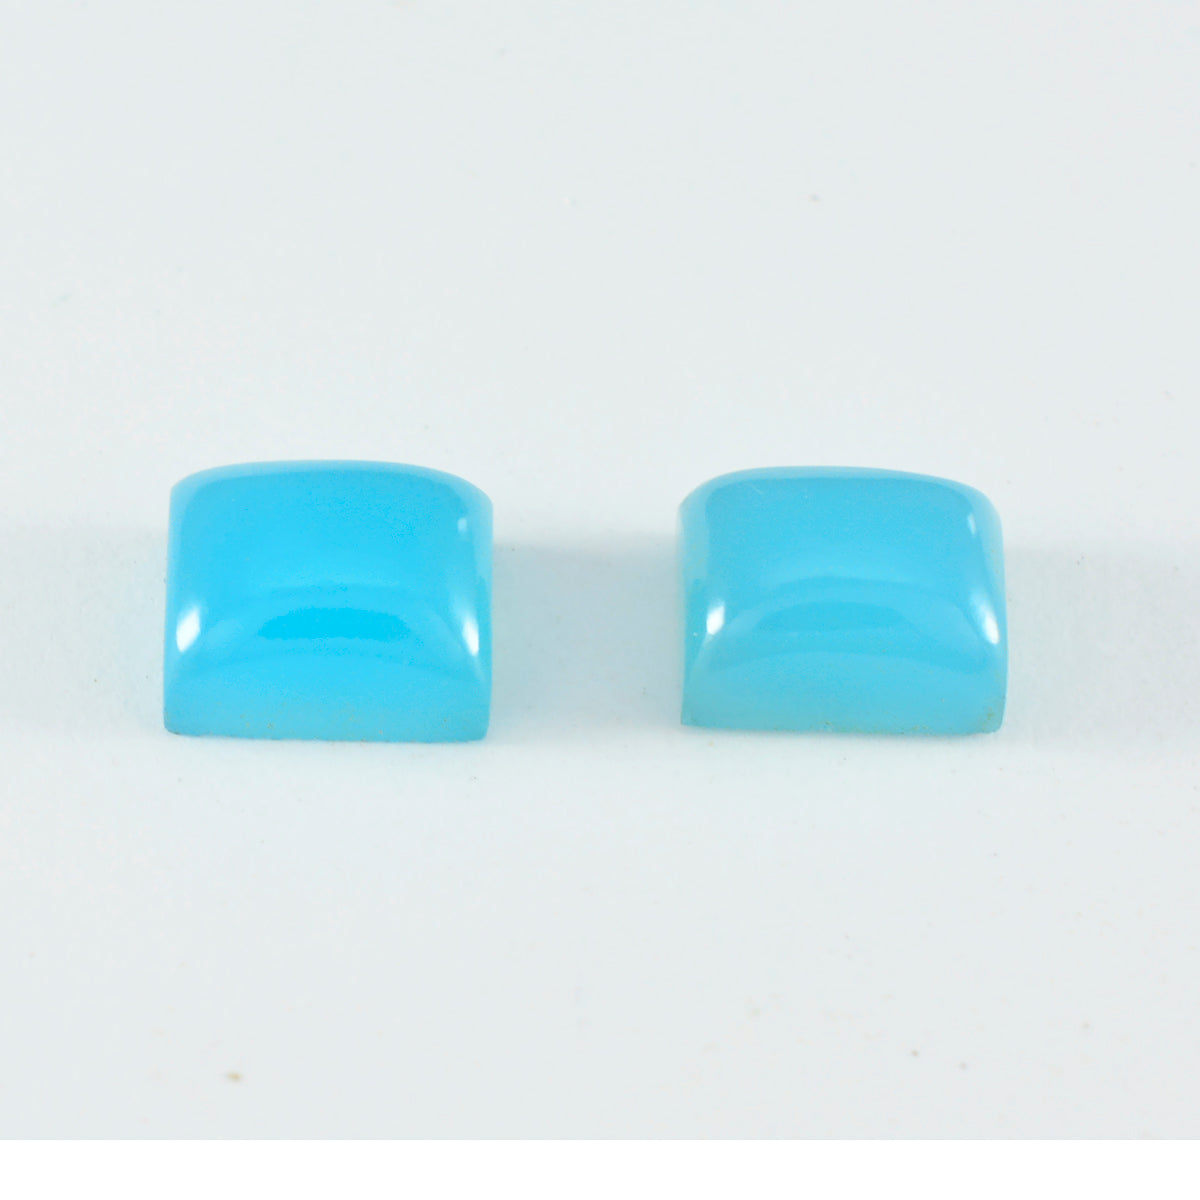 riyogems 1 st blå kalcedon cabochon 6x8 mm oktagon form fin kvalitet lösa ädelstenar